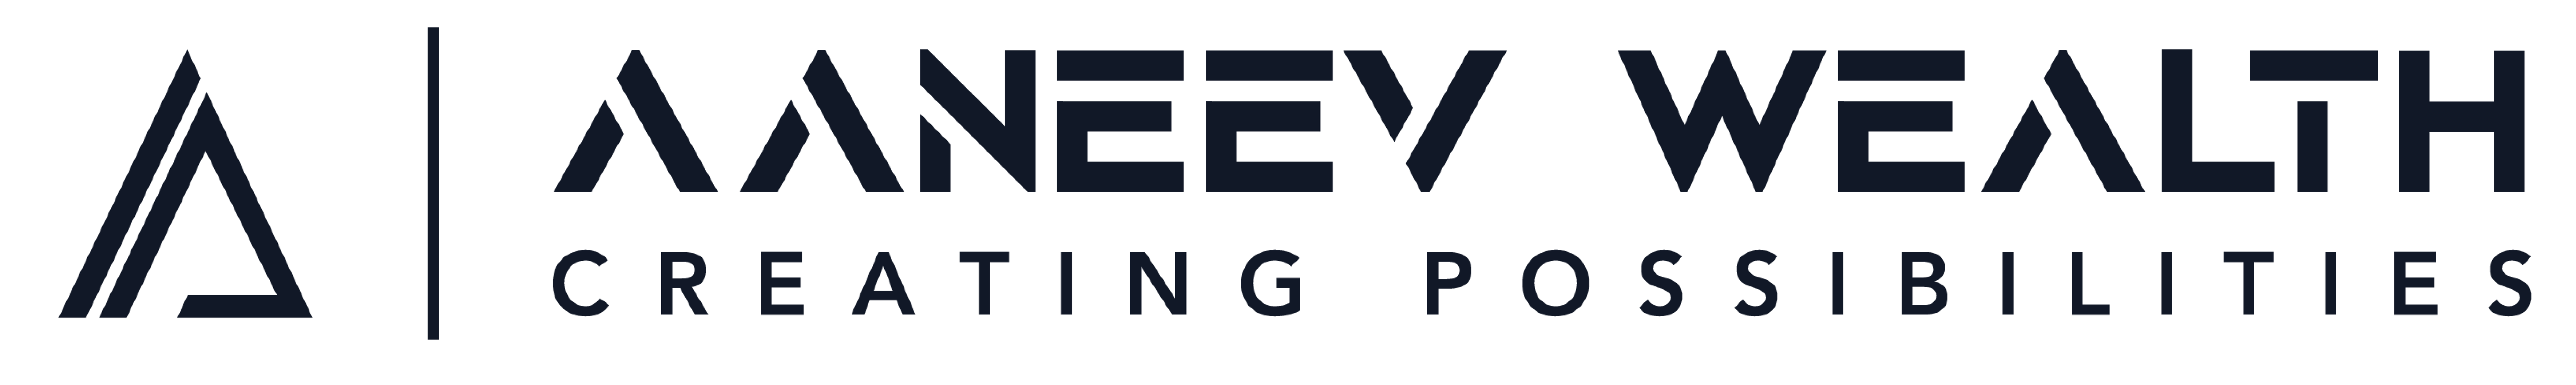 aaneev-wealth-logo-dark